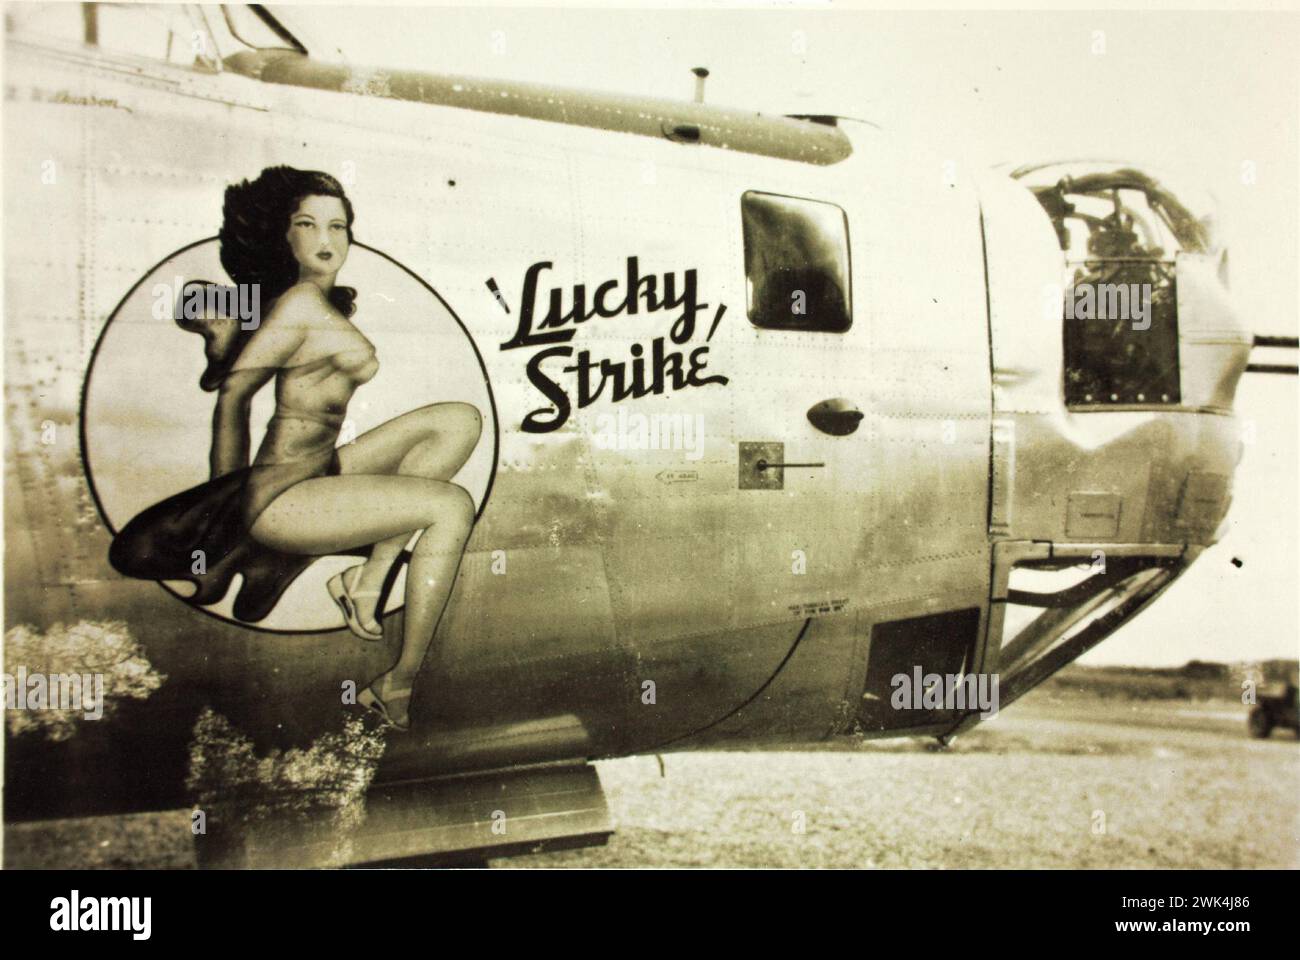 Davanti a un aereo militare B-24 Liberator del 380th Bomb Group Consolidated, con un "Lucky Strike" e una donna dipinta sulla fusoliera. Foto vintage anni '1940 Foto Stock